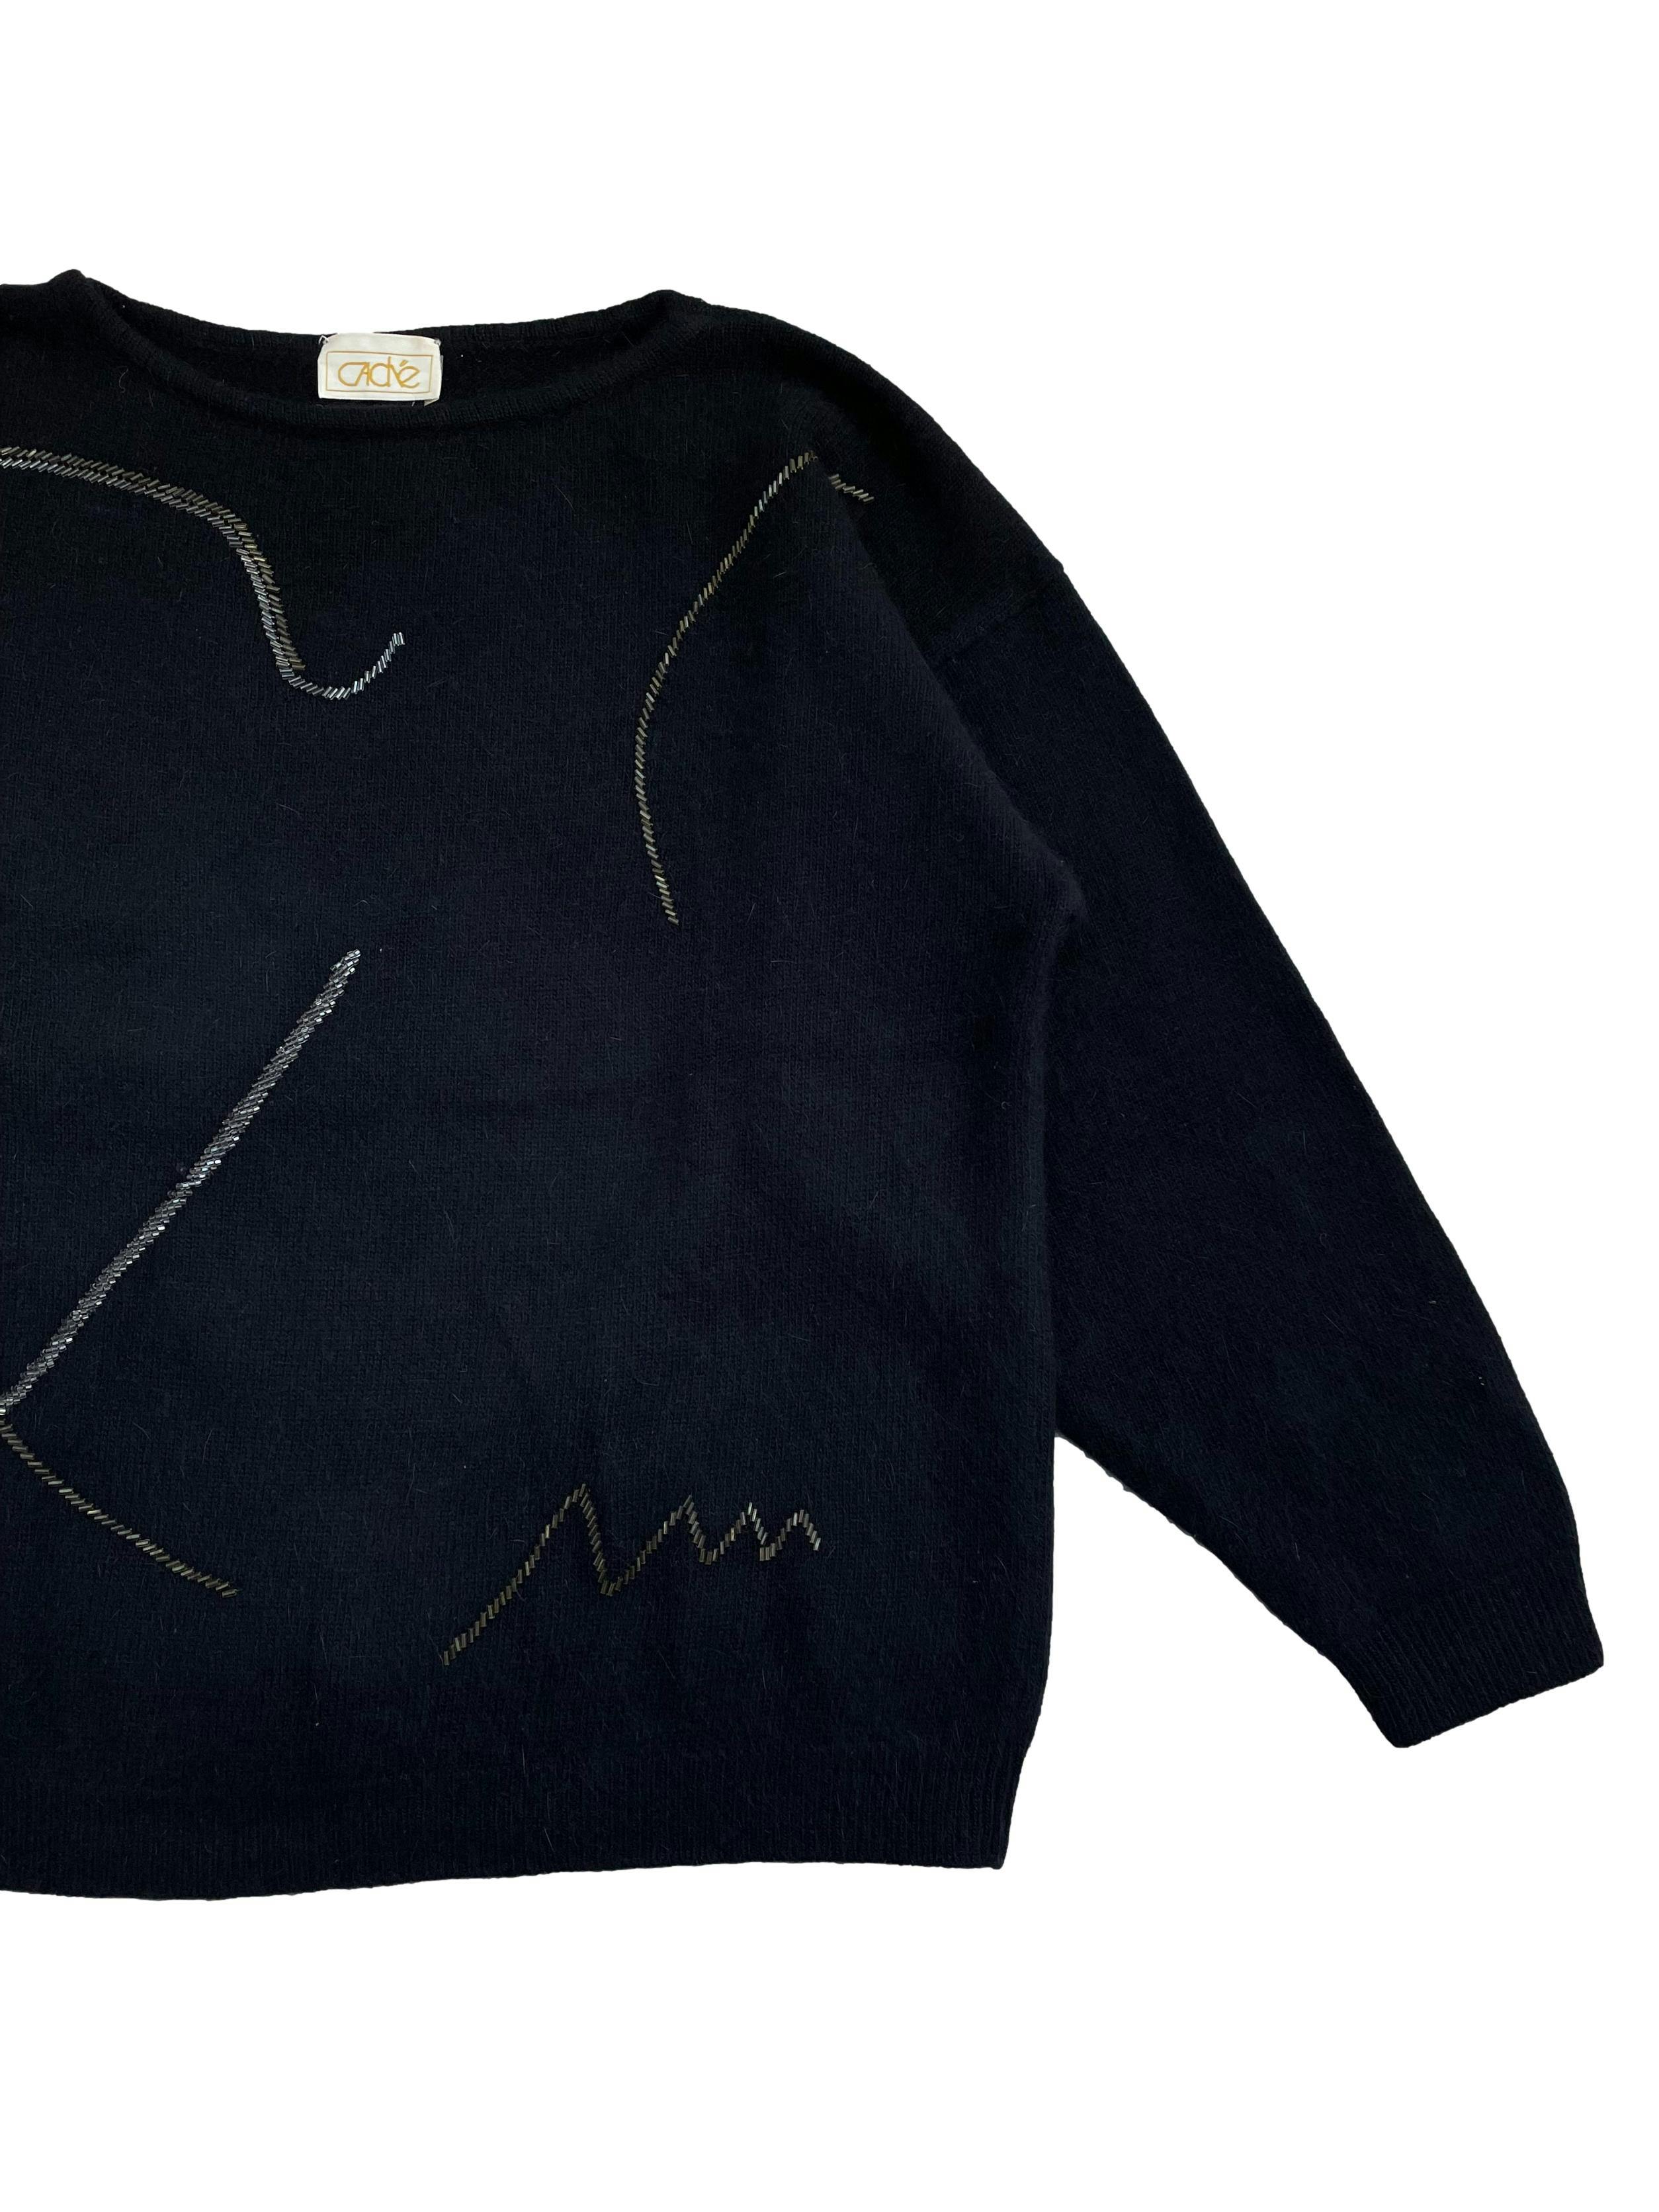 Chompa vintage negra , 50%lana 30% angora ,con bordados lineales de cuentas metálicas en delantero, mangas ligeramente murciélago .Largo 64cm.